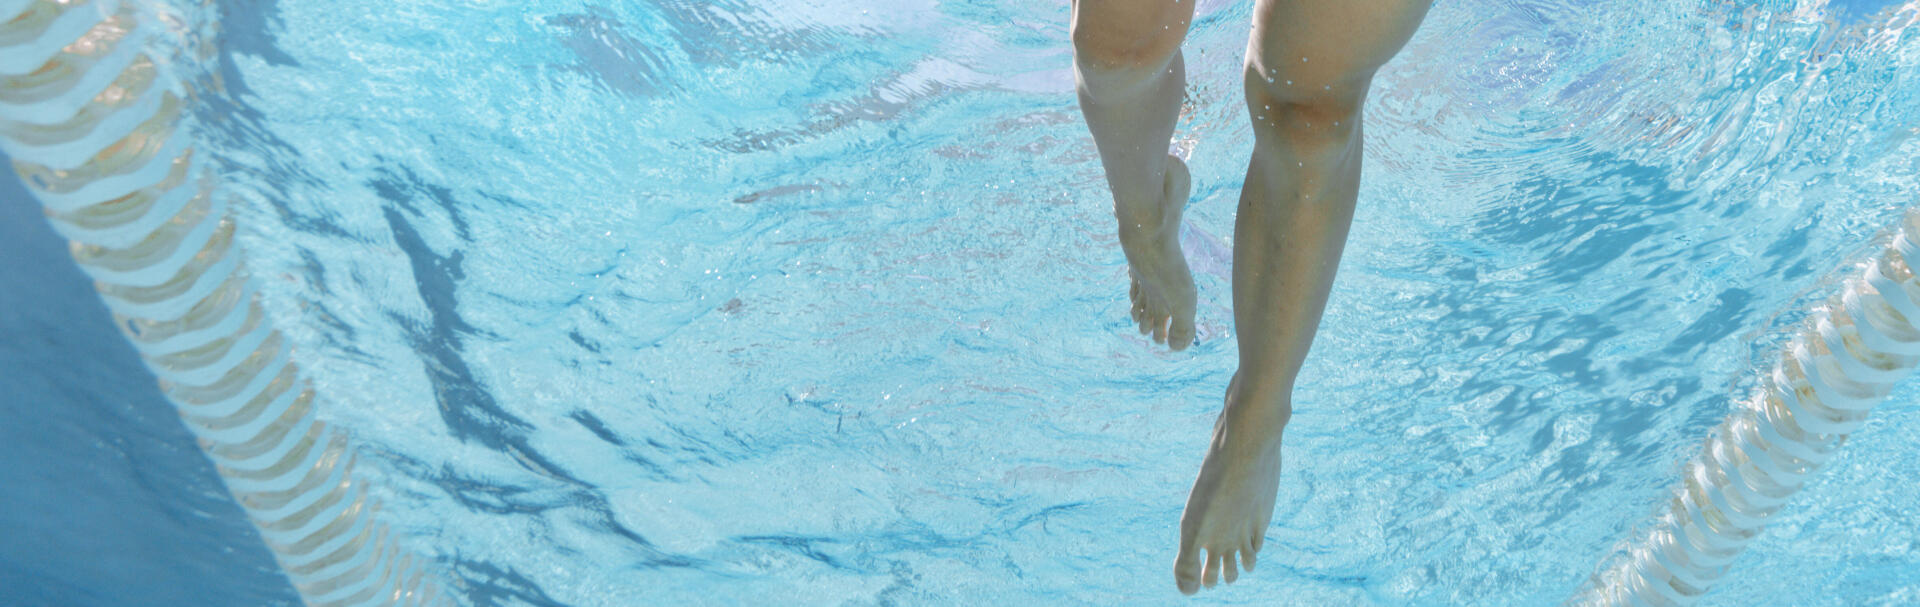 精進游泳時的腿部打水動作